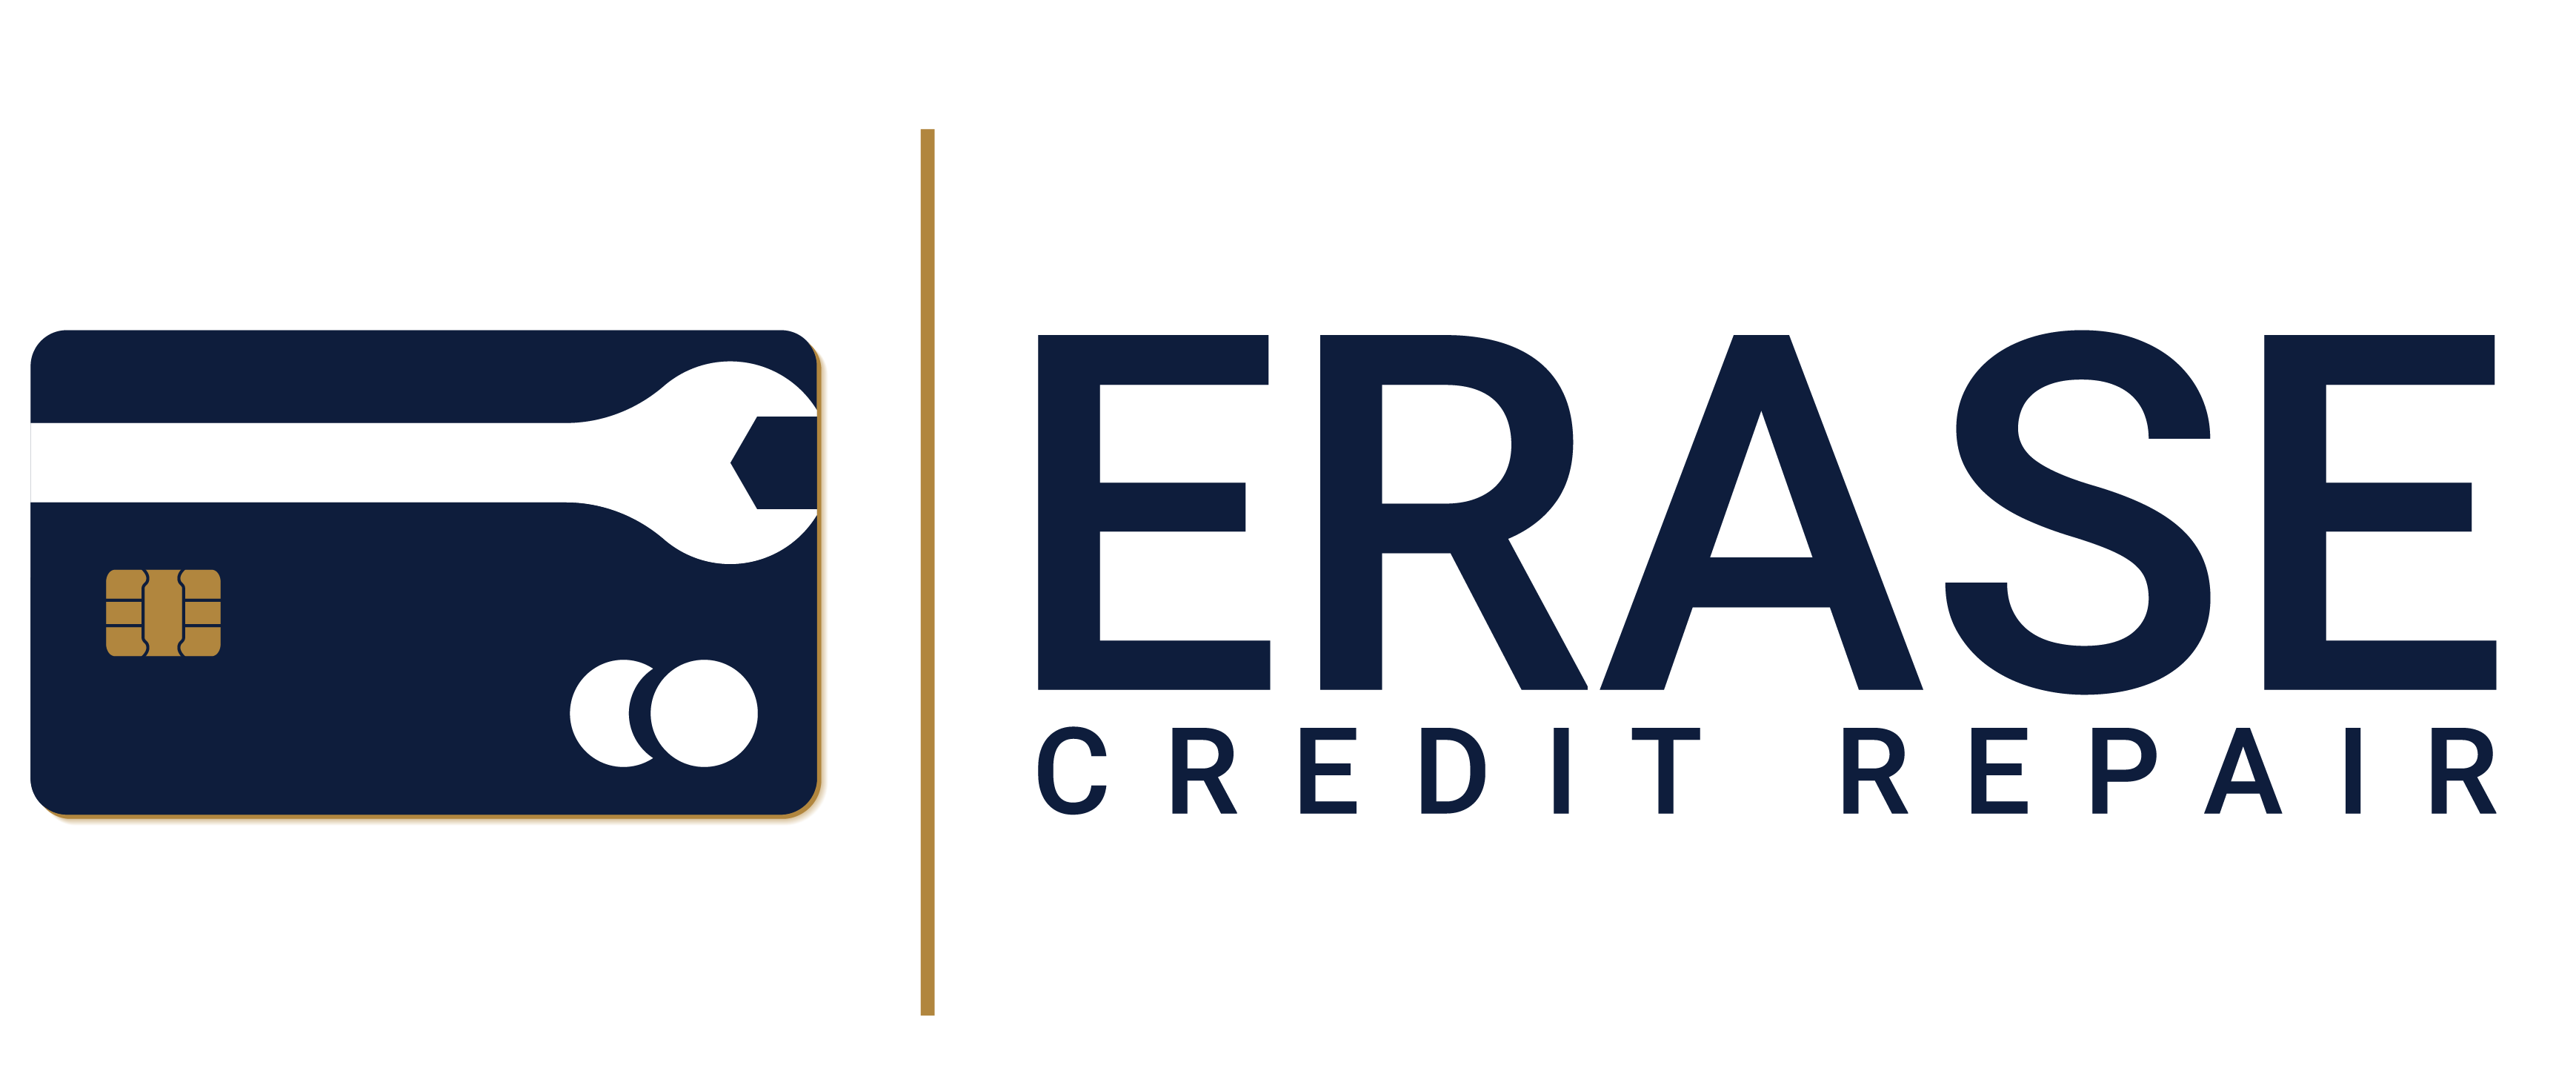 Erase Credit Repair